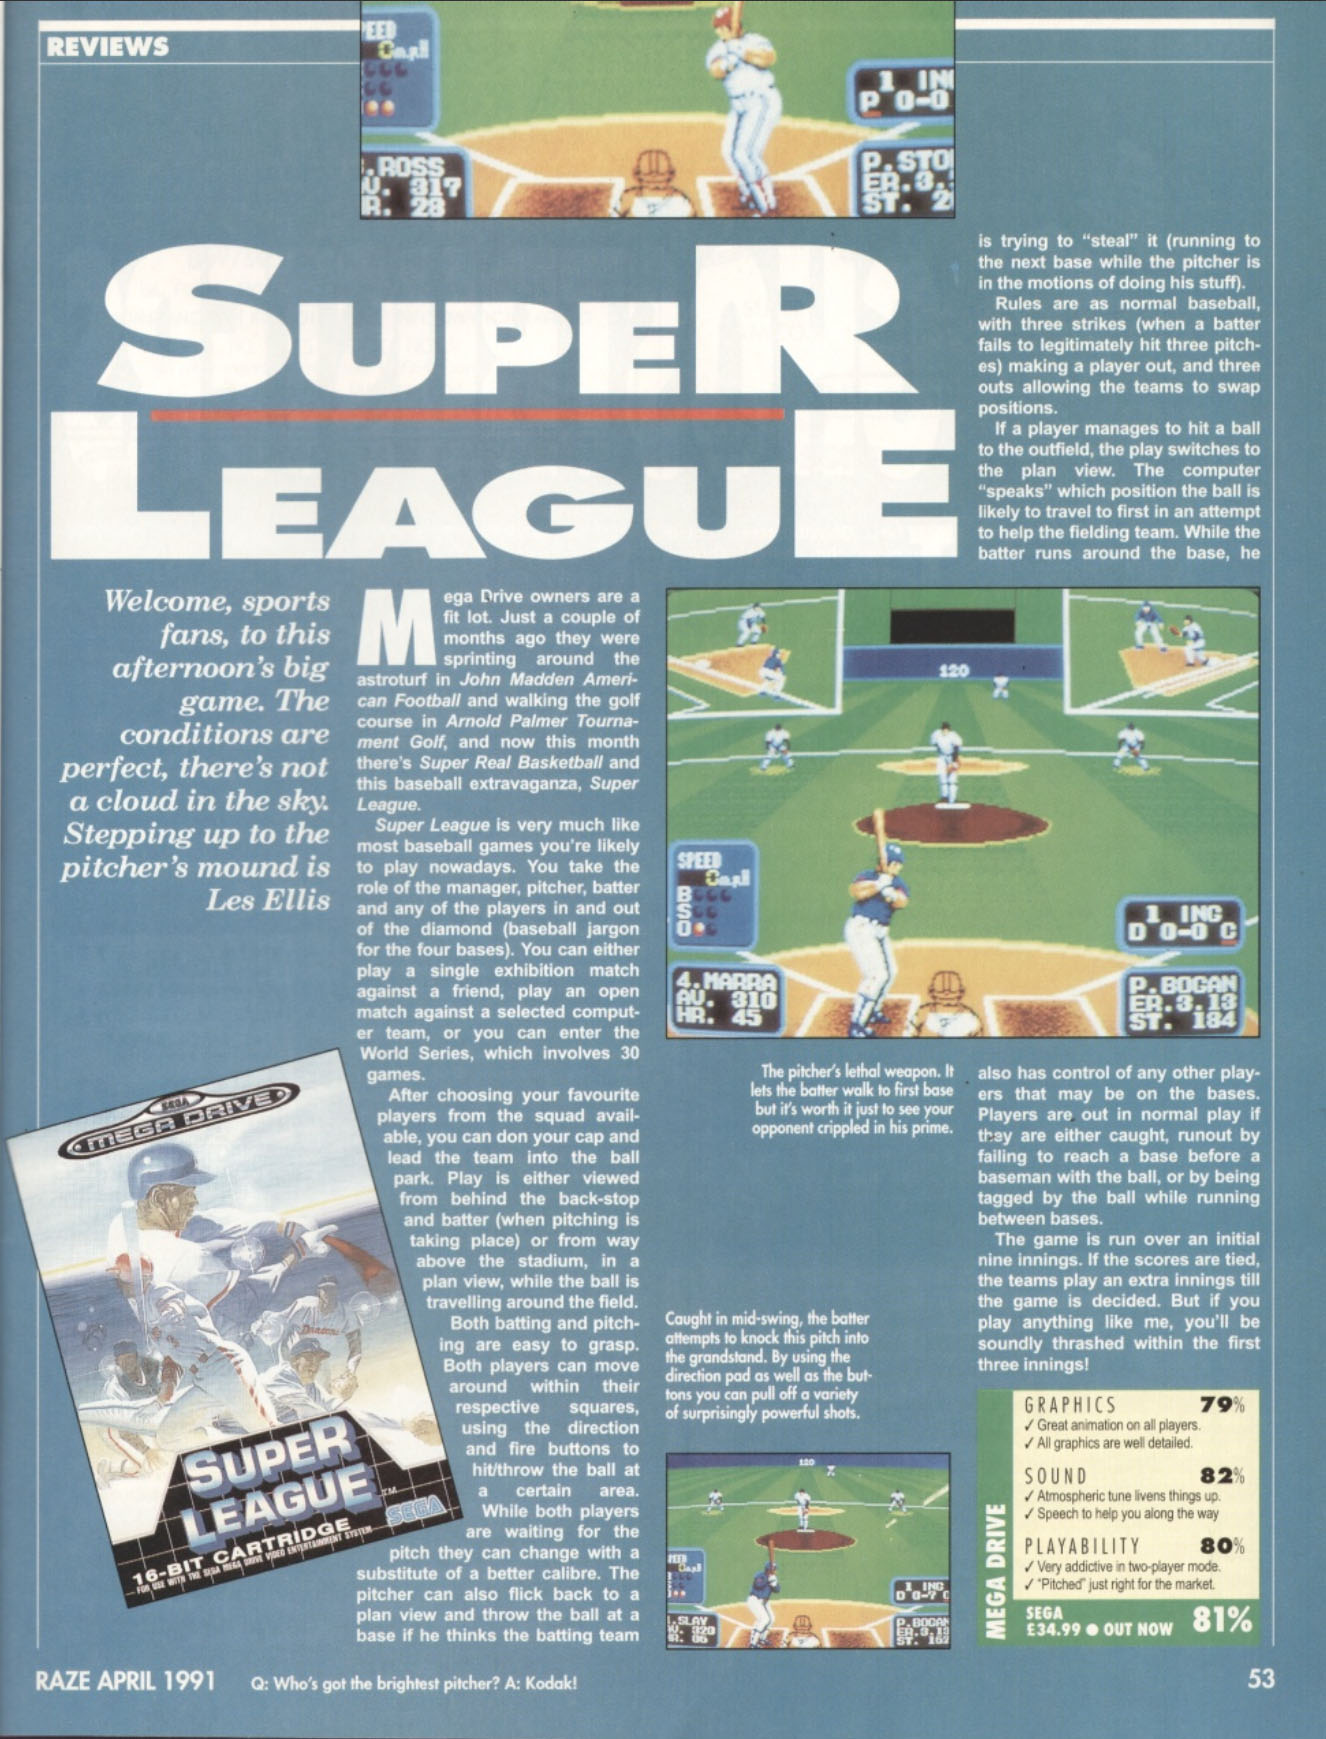 Super League Review, Raze April 1991 page 53